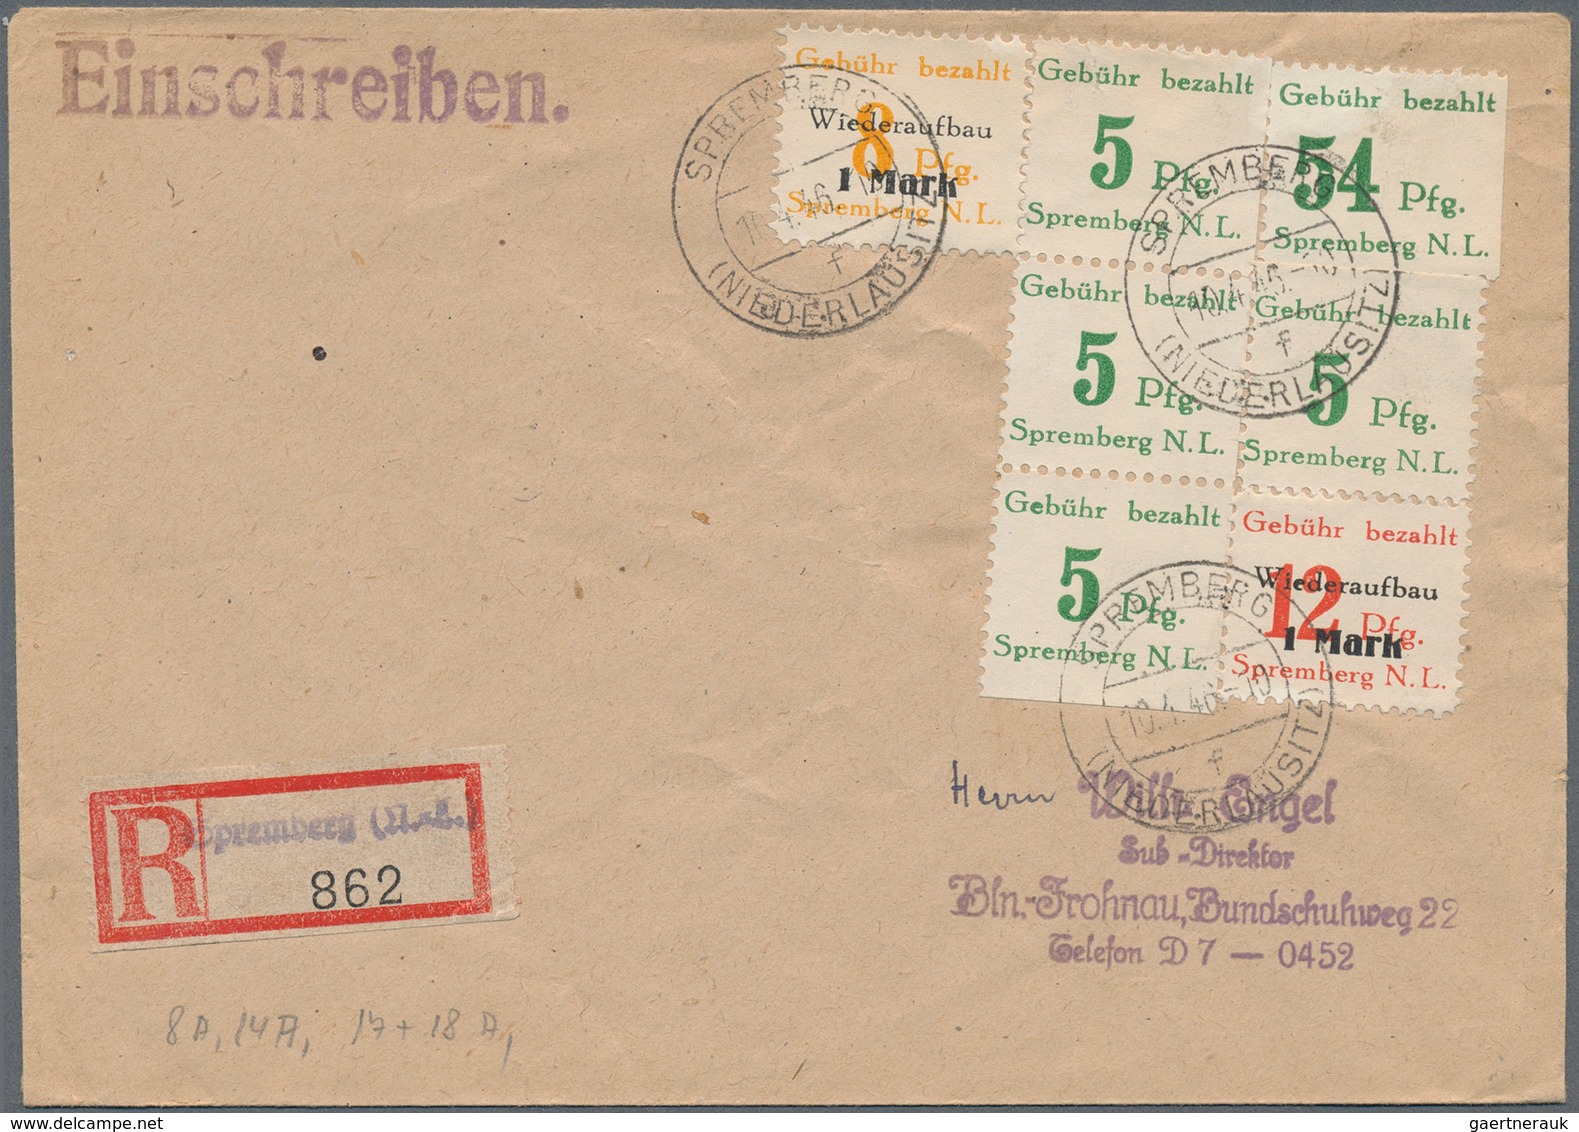 Altdeutschland - Vorphila: 1700/1910 (ca.), Posten von ca. 60-70 Briefbögen/Dokumenten.